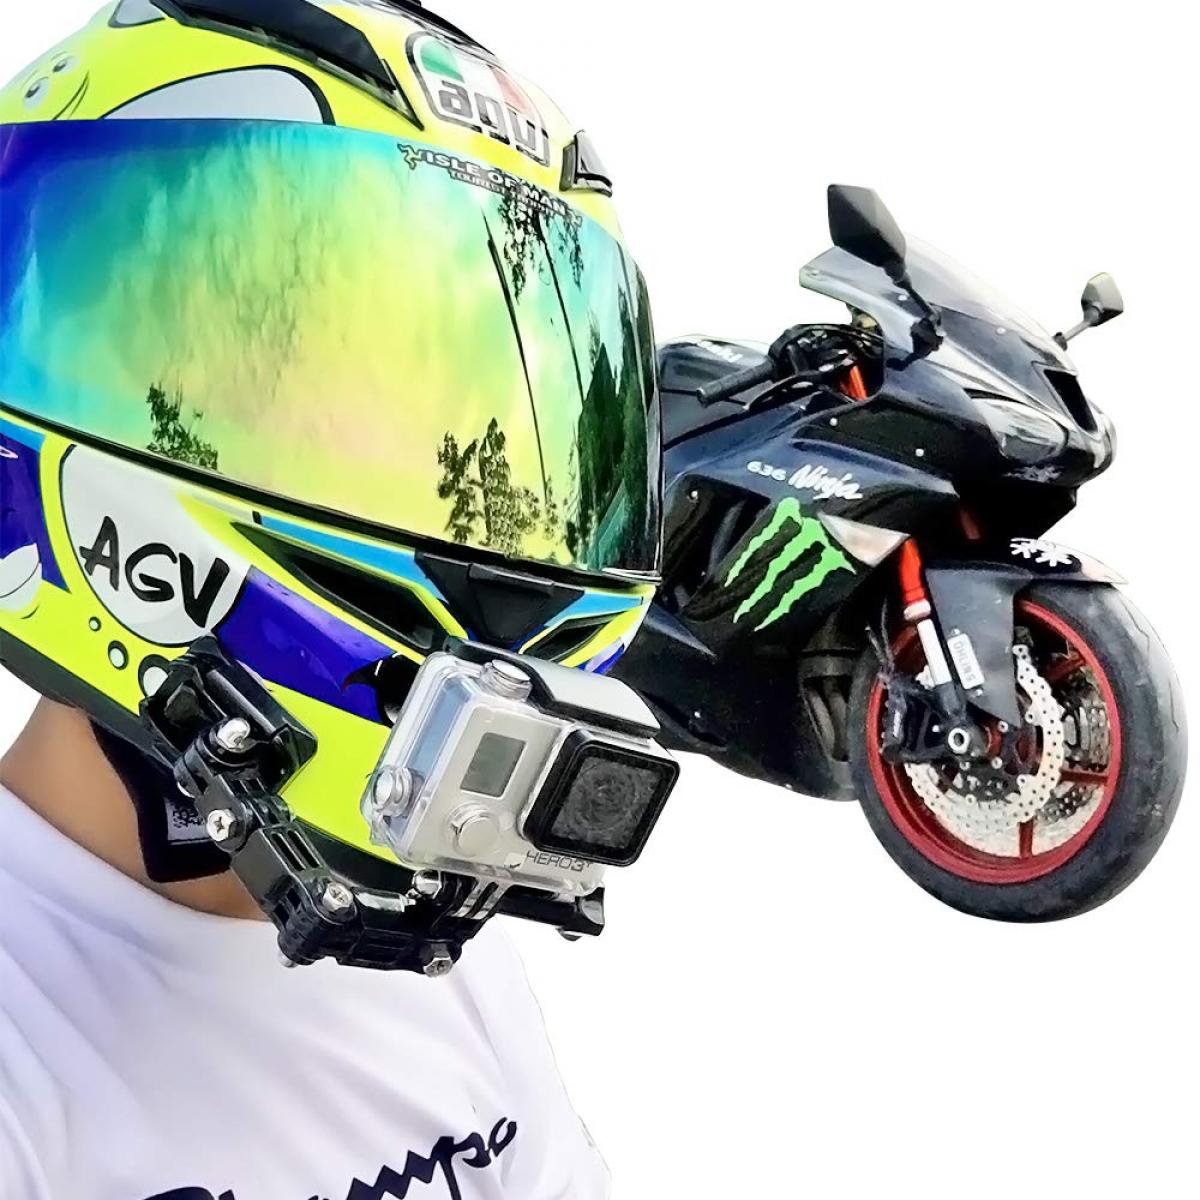 Kit de support de menton pour casque de moto compatible avec GoPro